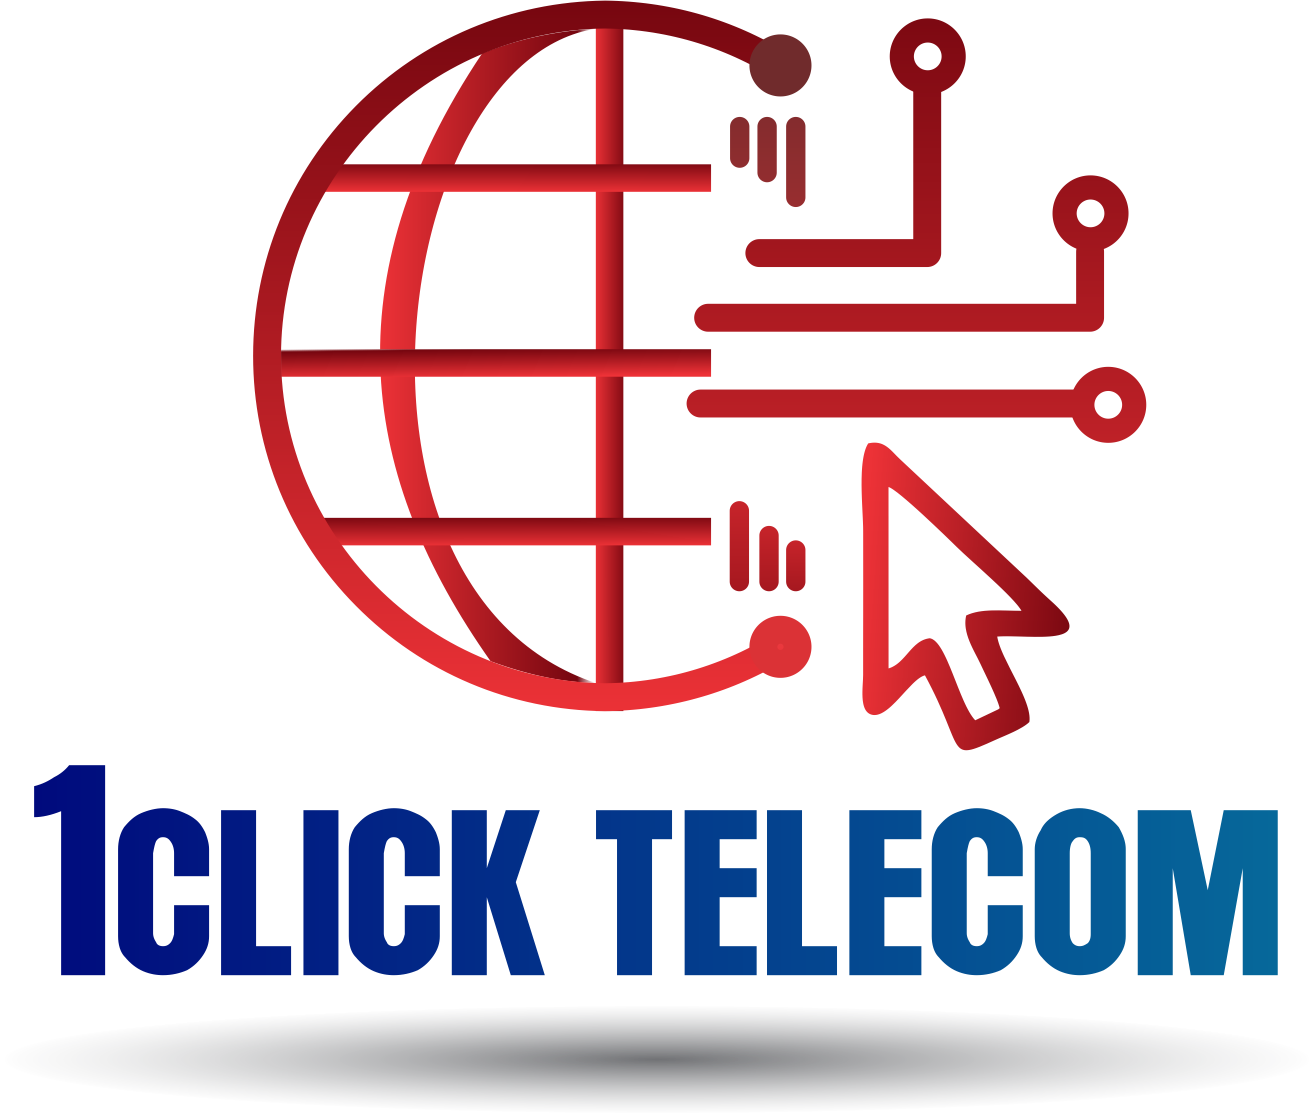 1Click Telecom